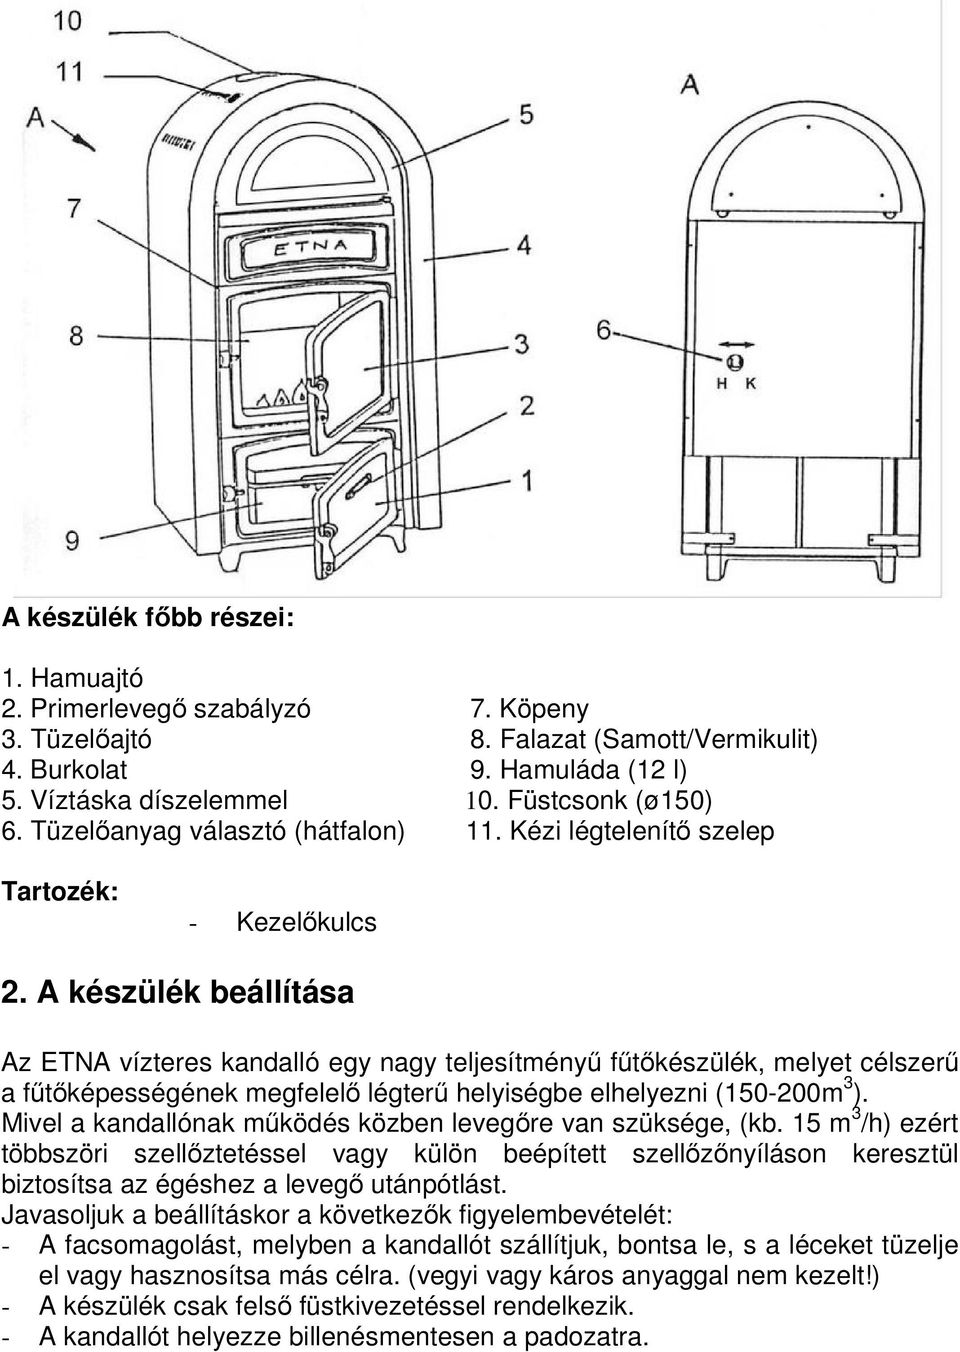 ETNA 12 kw Fa- és széntüzeléső vízteres kandalló - PDF Ingyenes letöltés